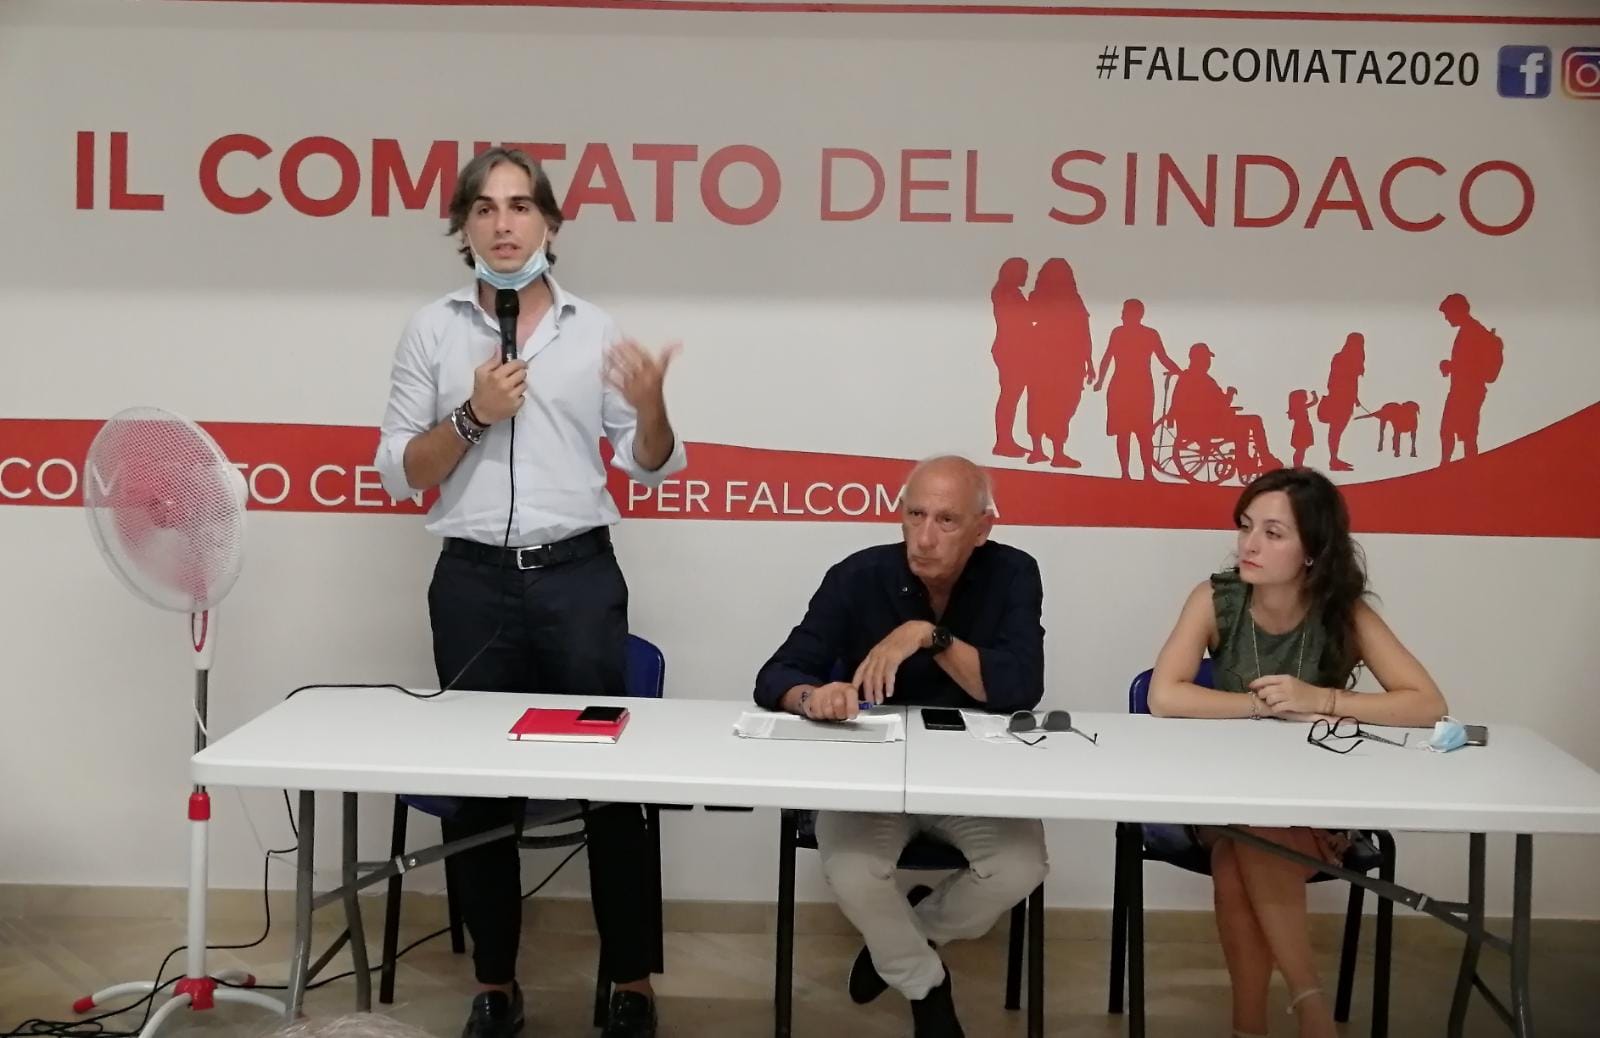 Elezioni a Reggio Calabria, presentata una delle liste a sostegno di Falcomatà